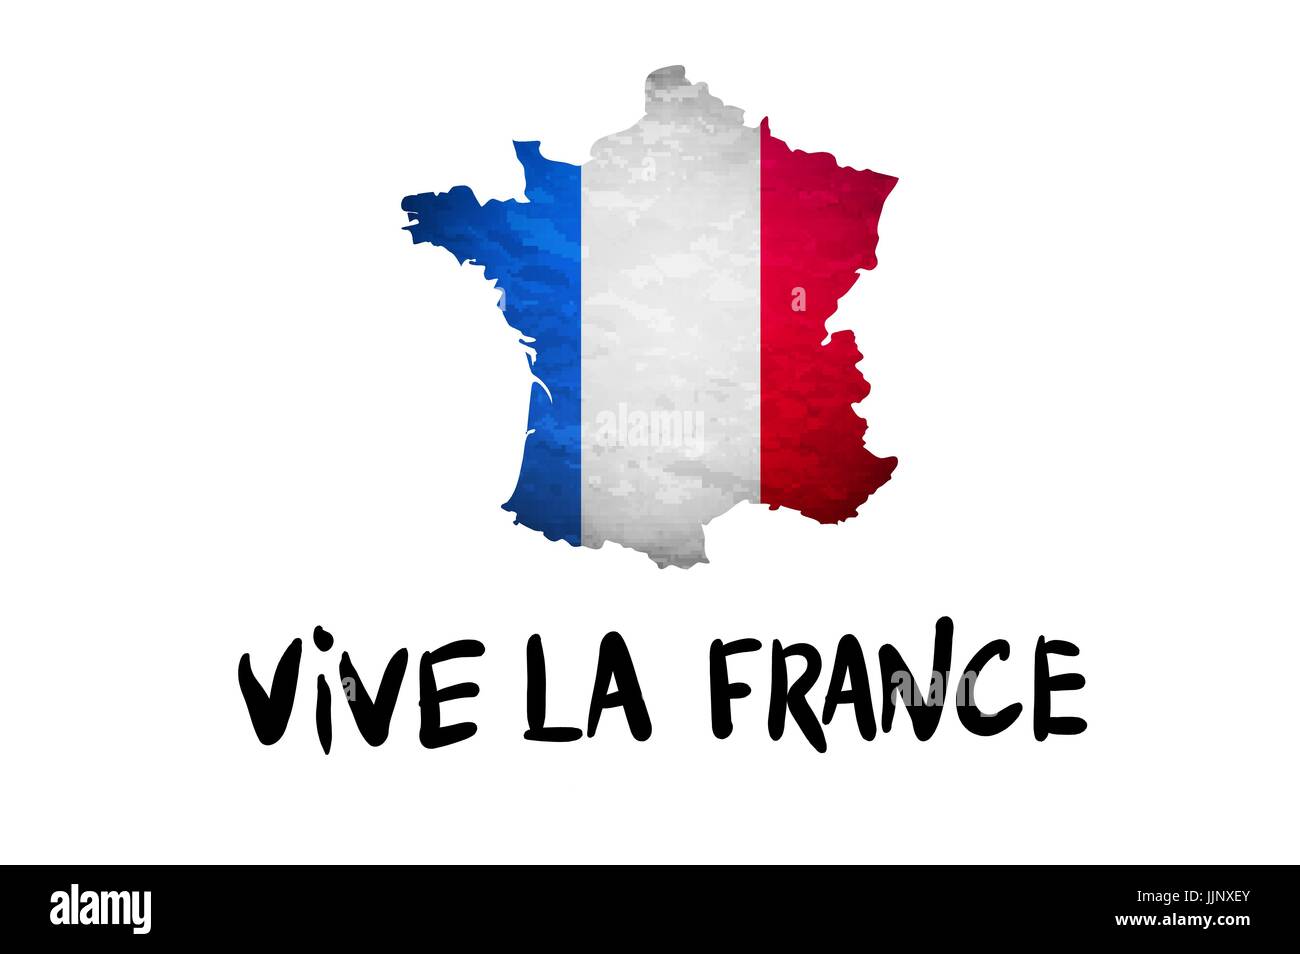 Vive la France Nachricht und französische Republik Nationalflagge überlagert, detaillierte Übersichtskarte isoliert auf weißem Hintergrund Vektorgrafiken Stock Vektor